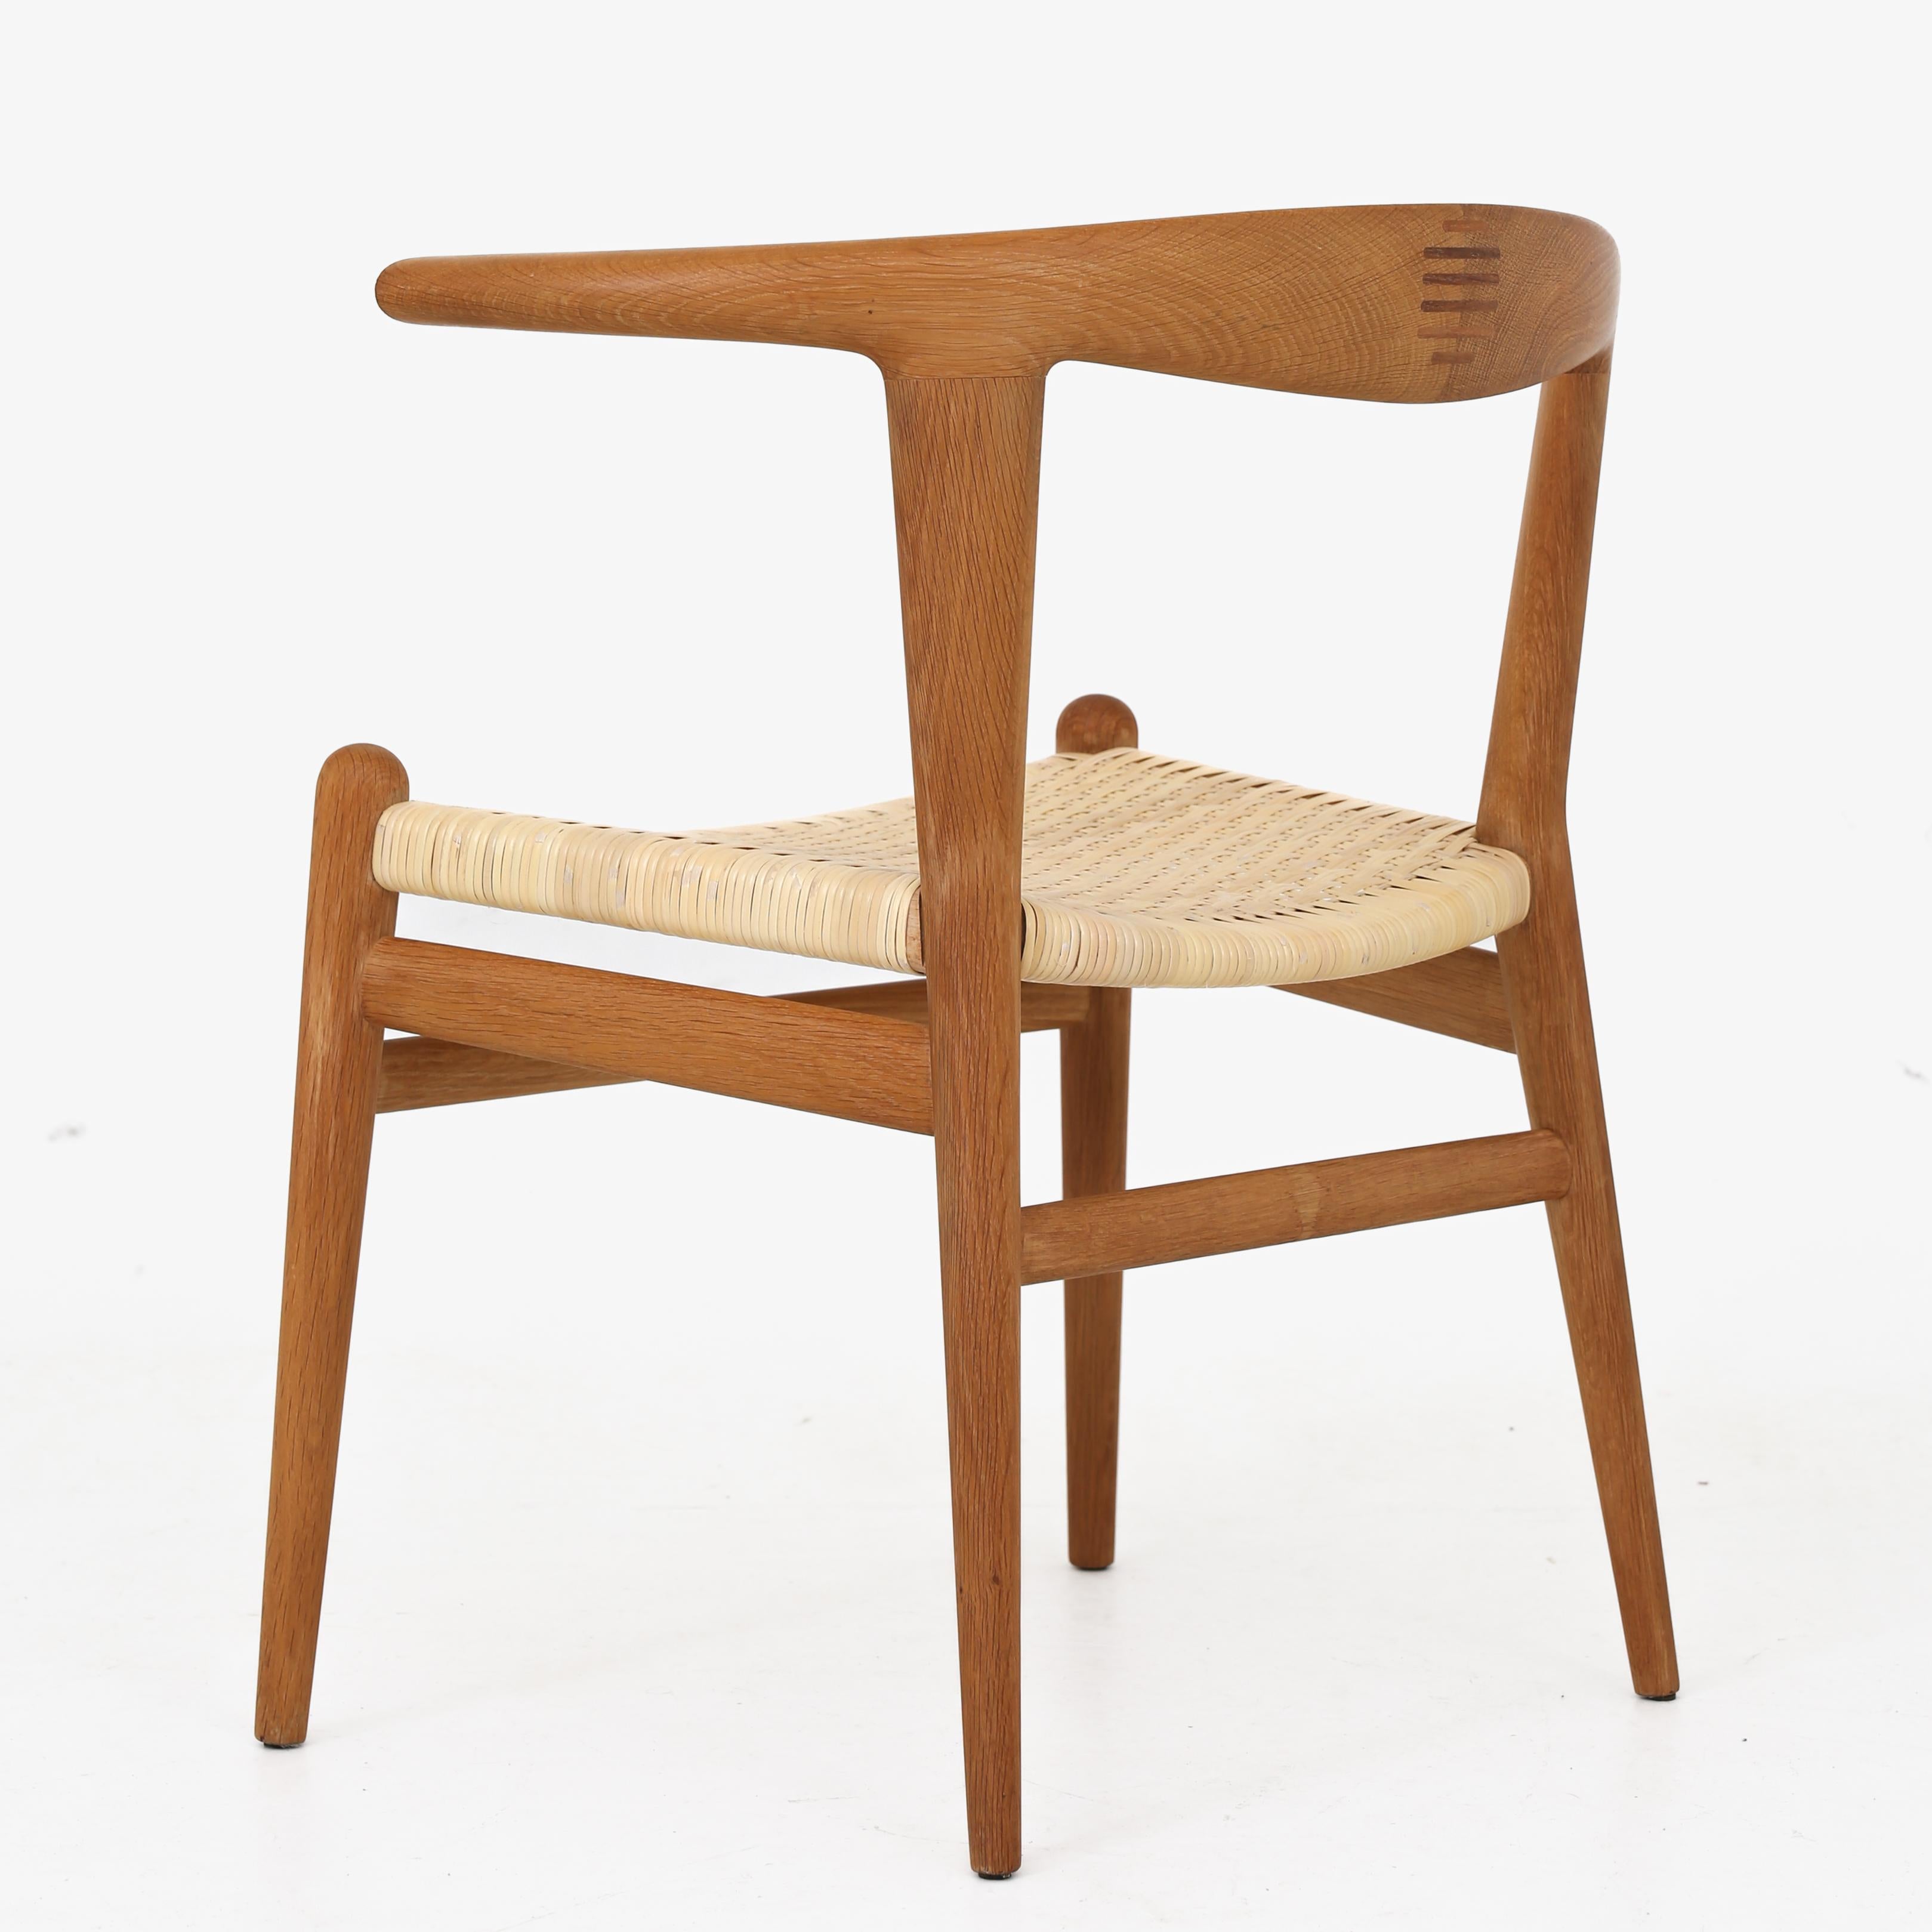 JH 518 - Rare 'Bull Chair' en chêne massif avec assise en canne tressée neuve. Label original du fabricant. Conçue en 1961. Hans J. Wegner / Johannes Hansen